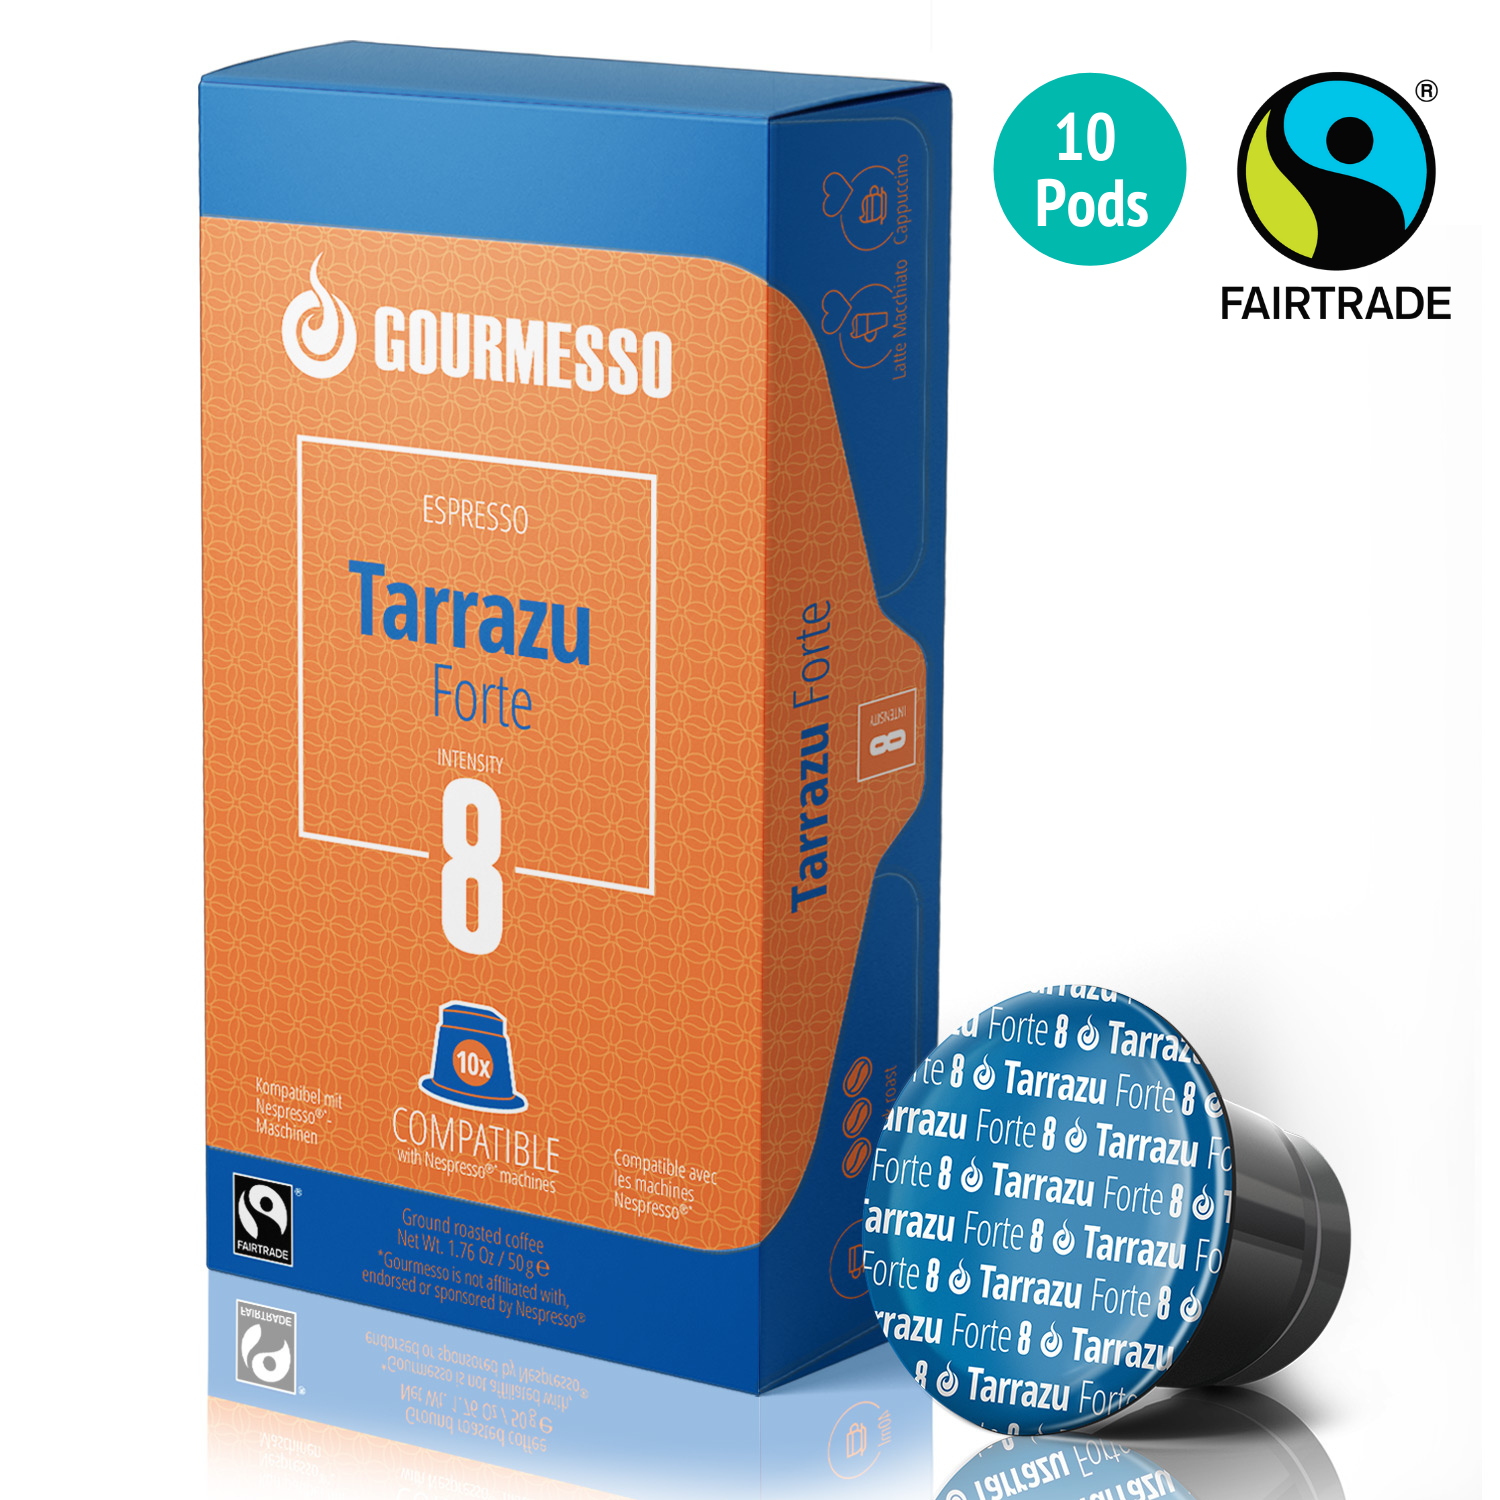 Image of Gourmesso Tarrazu Forte - Fairtrade - 10 Pods